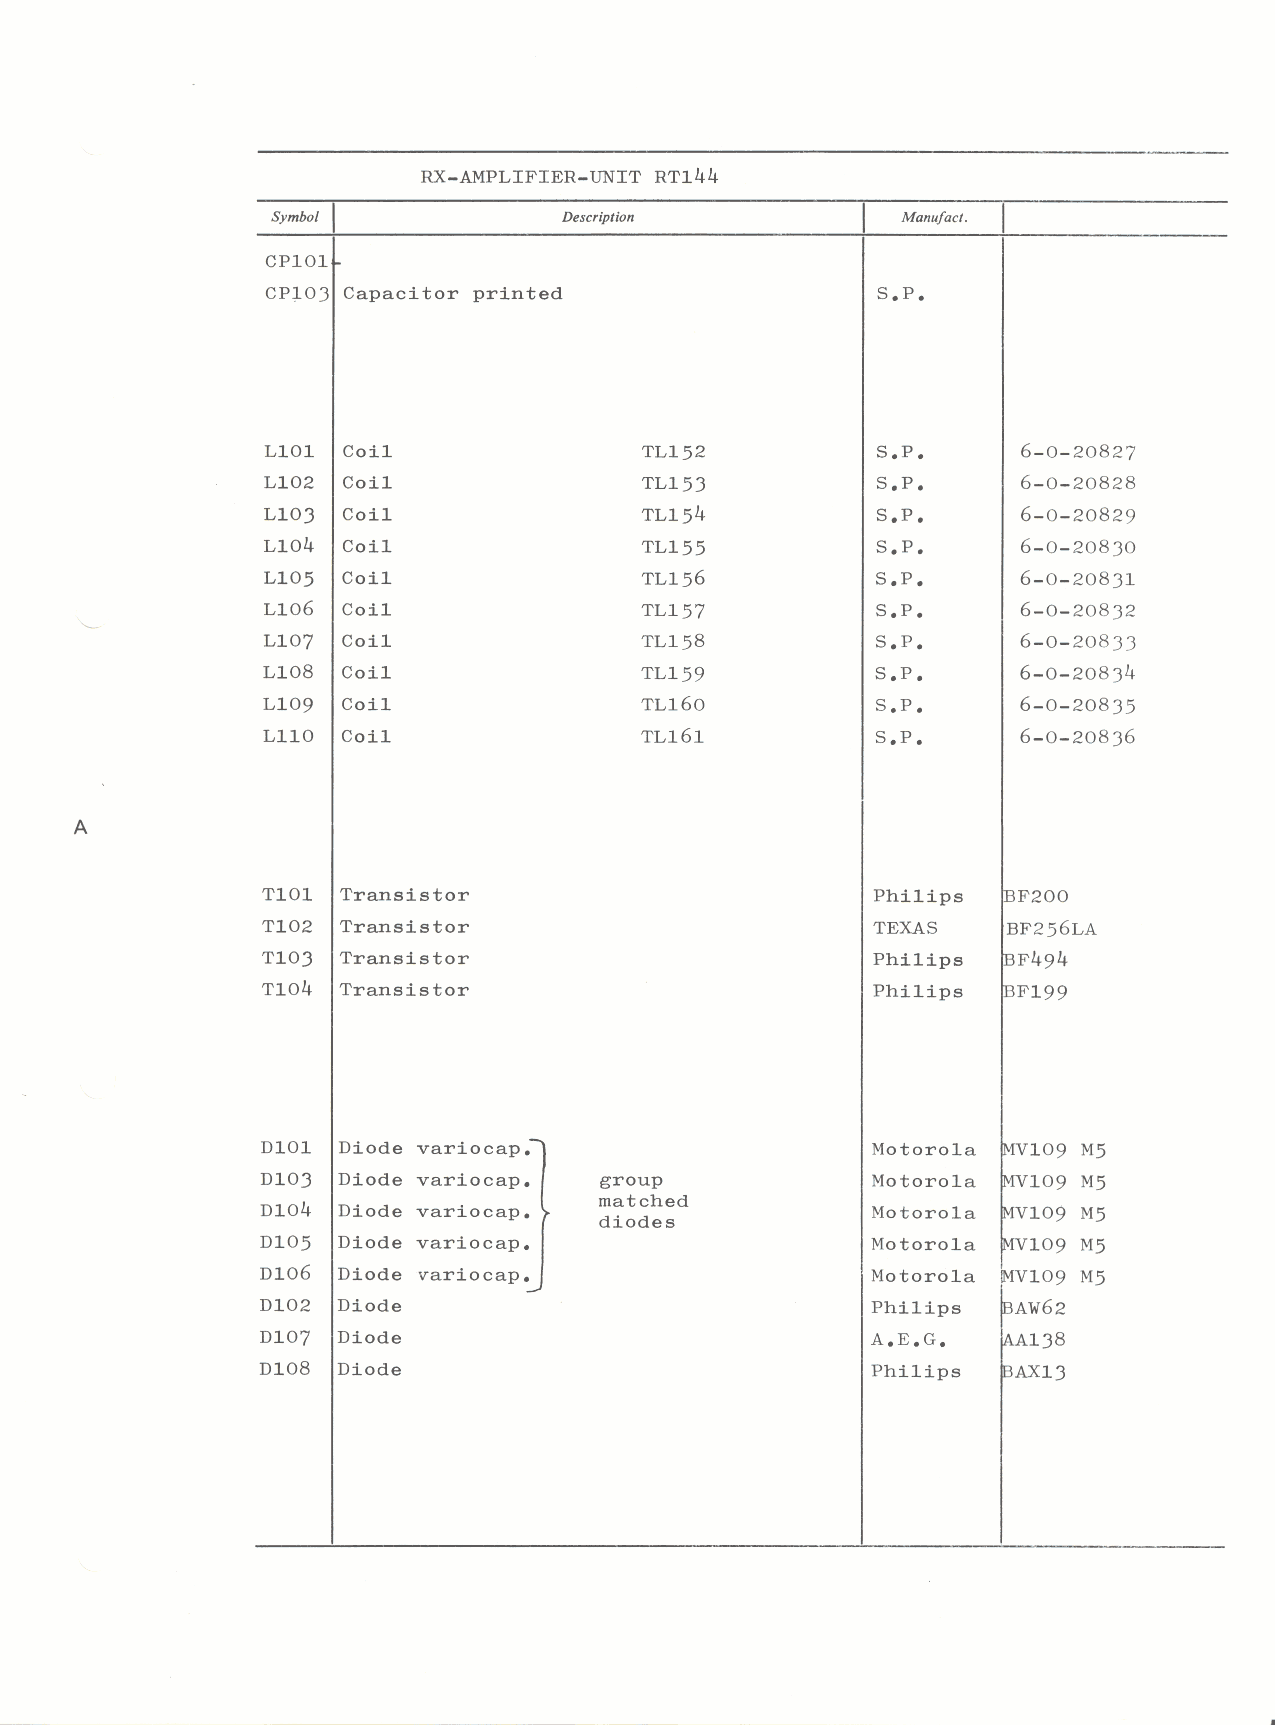 RX-amplifier-unit Part list-3